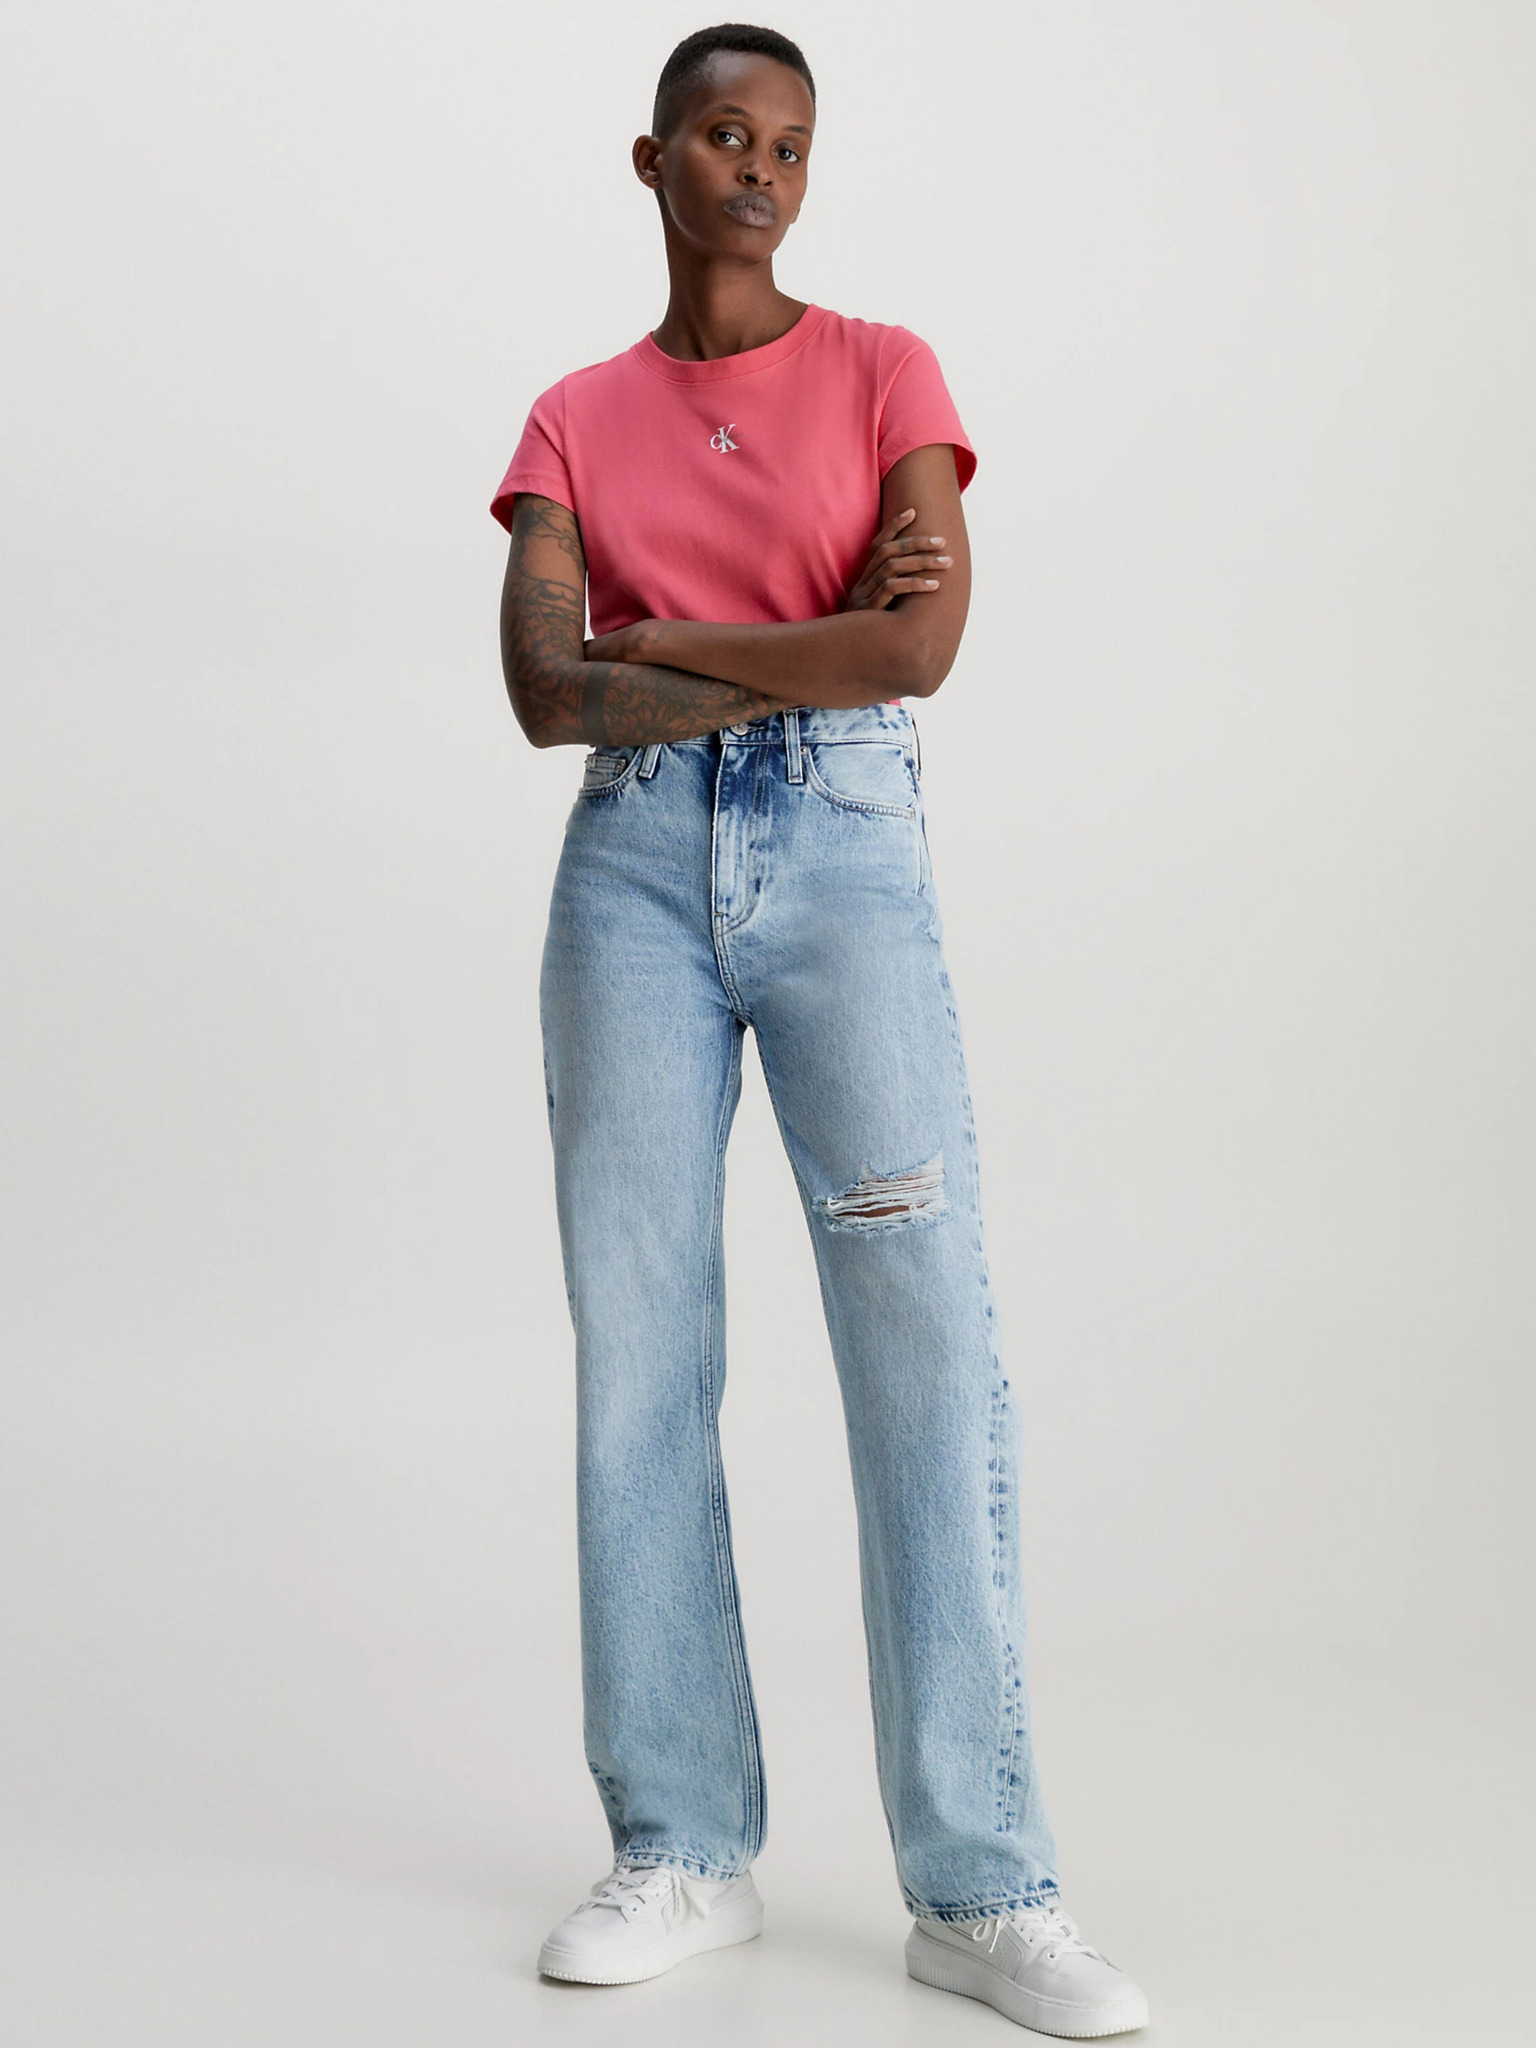 Triko Calvin Klein Jeans